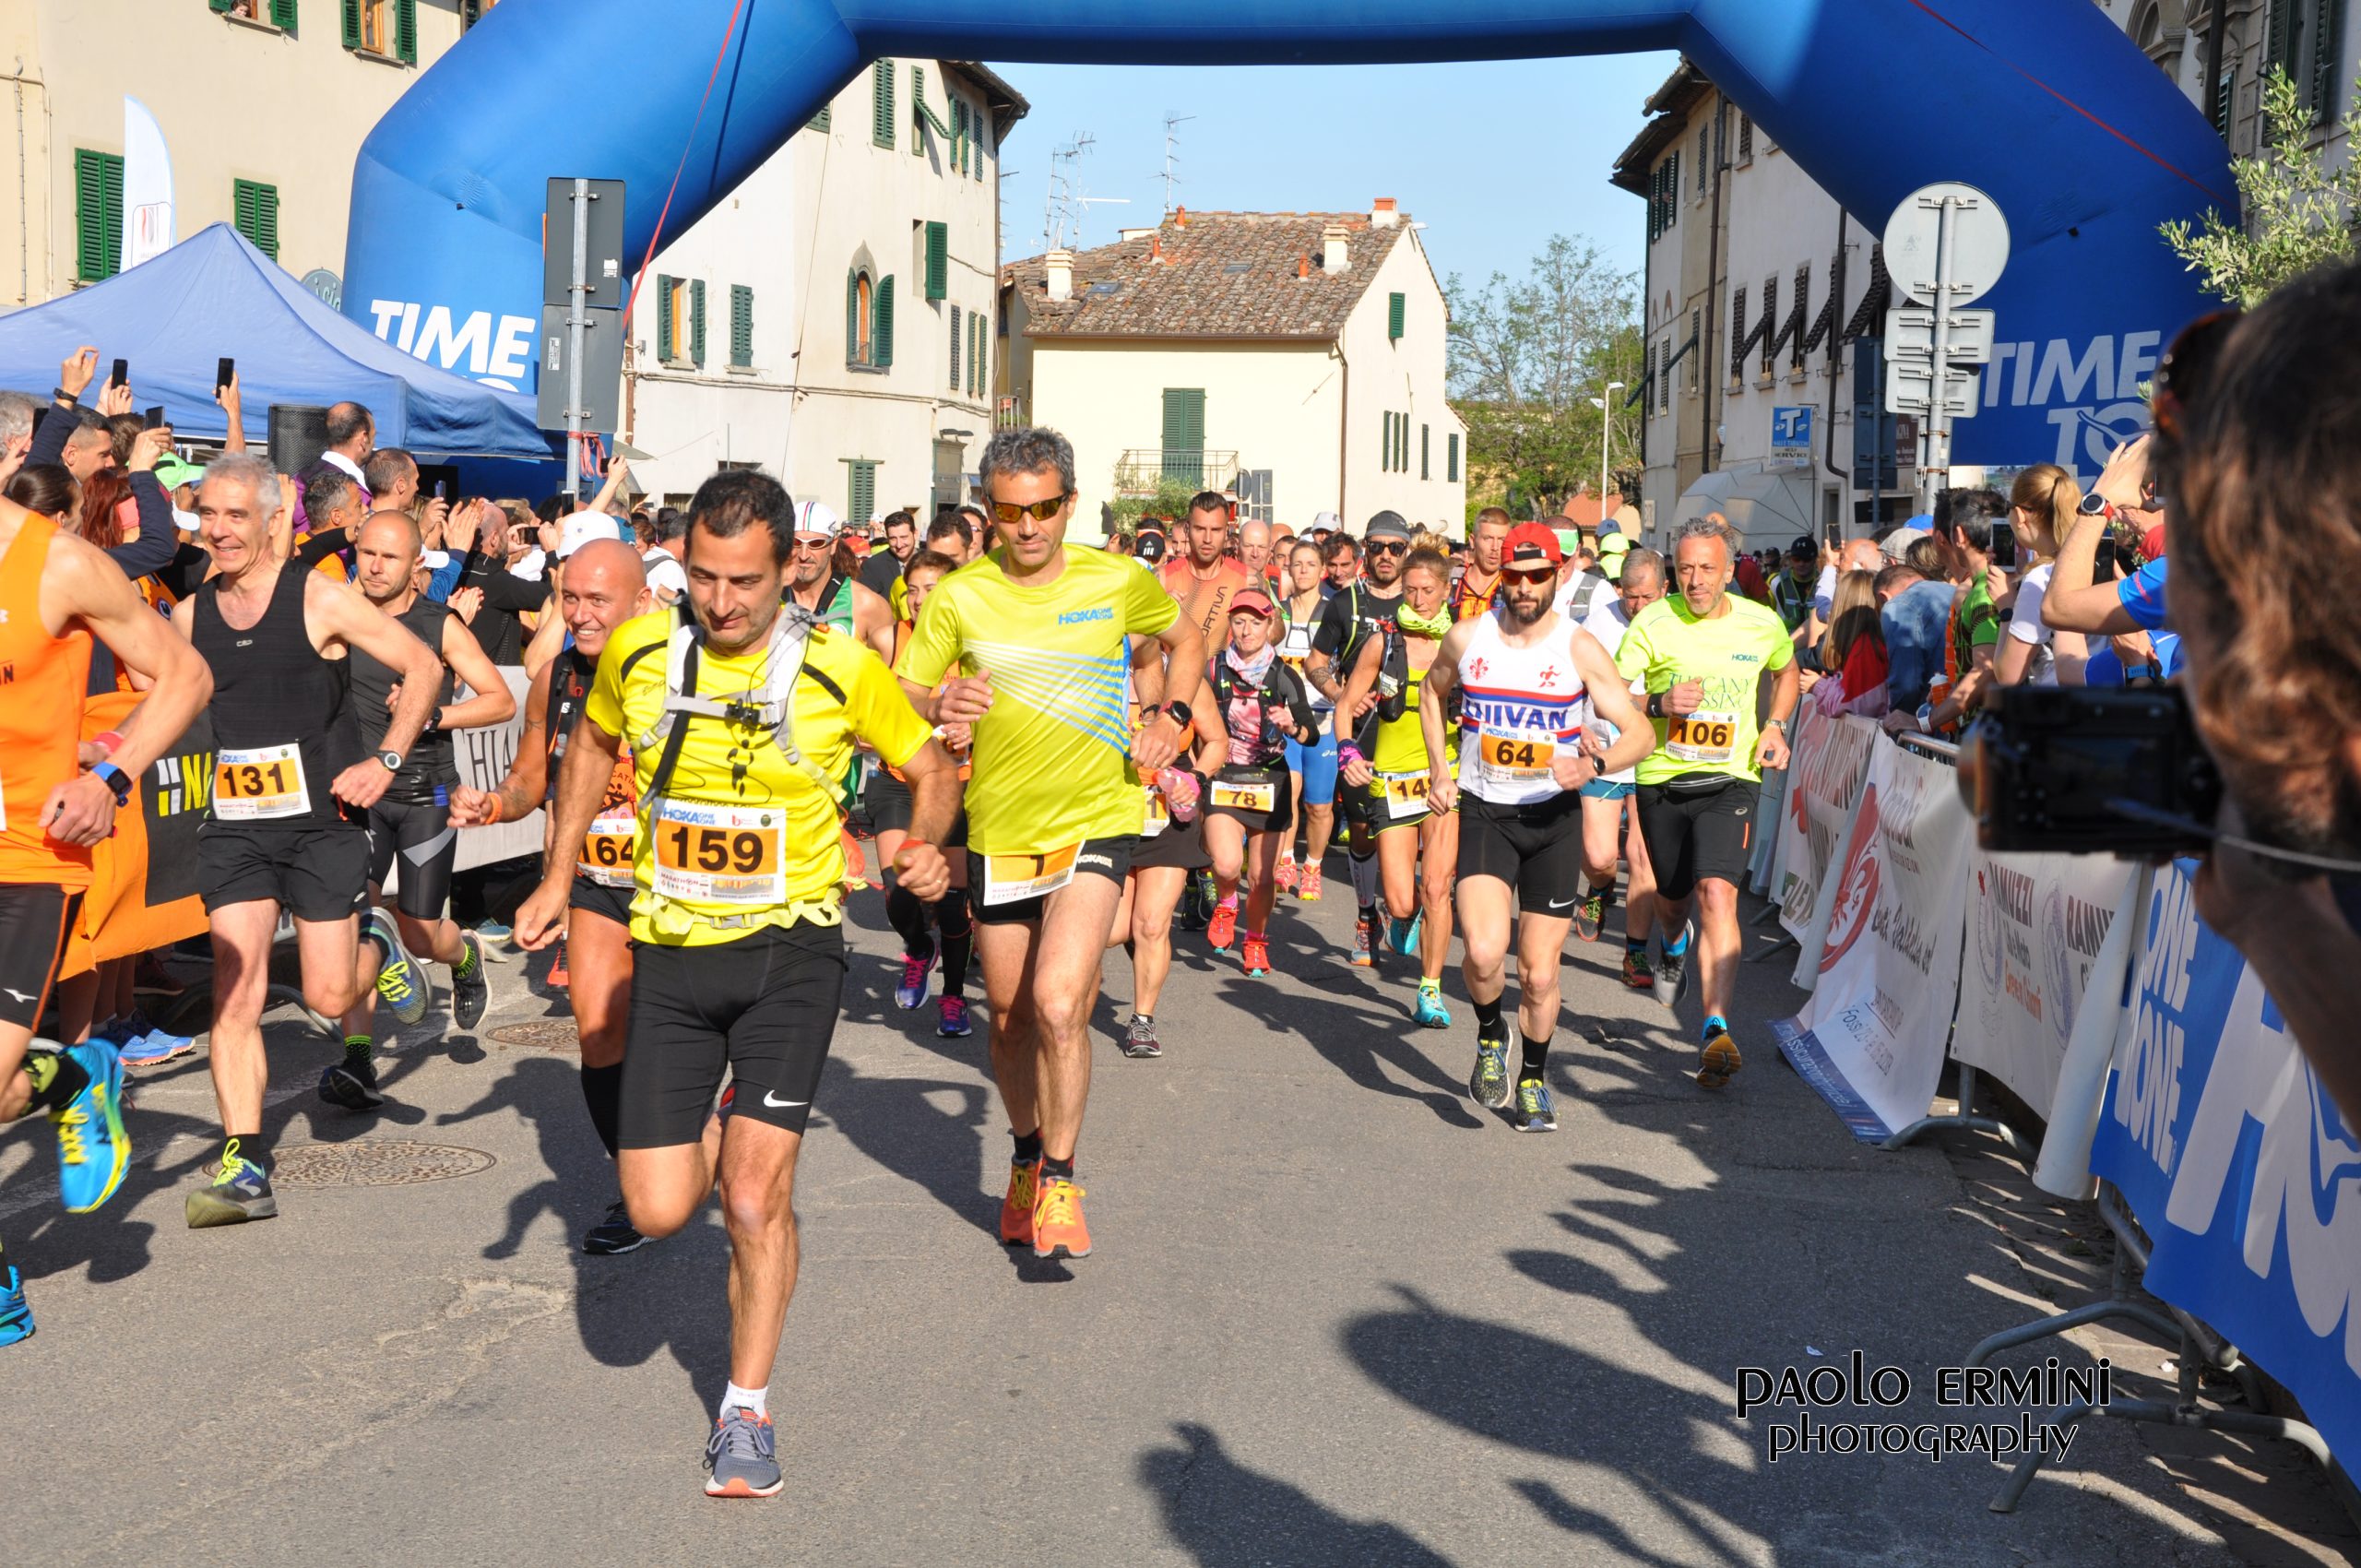 The Chianti Classico Marathon will be back on 5 June 2022